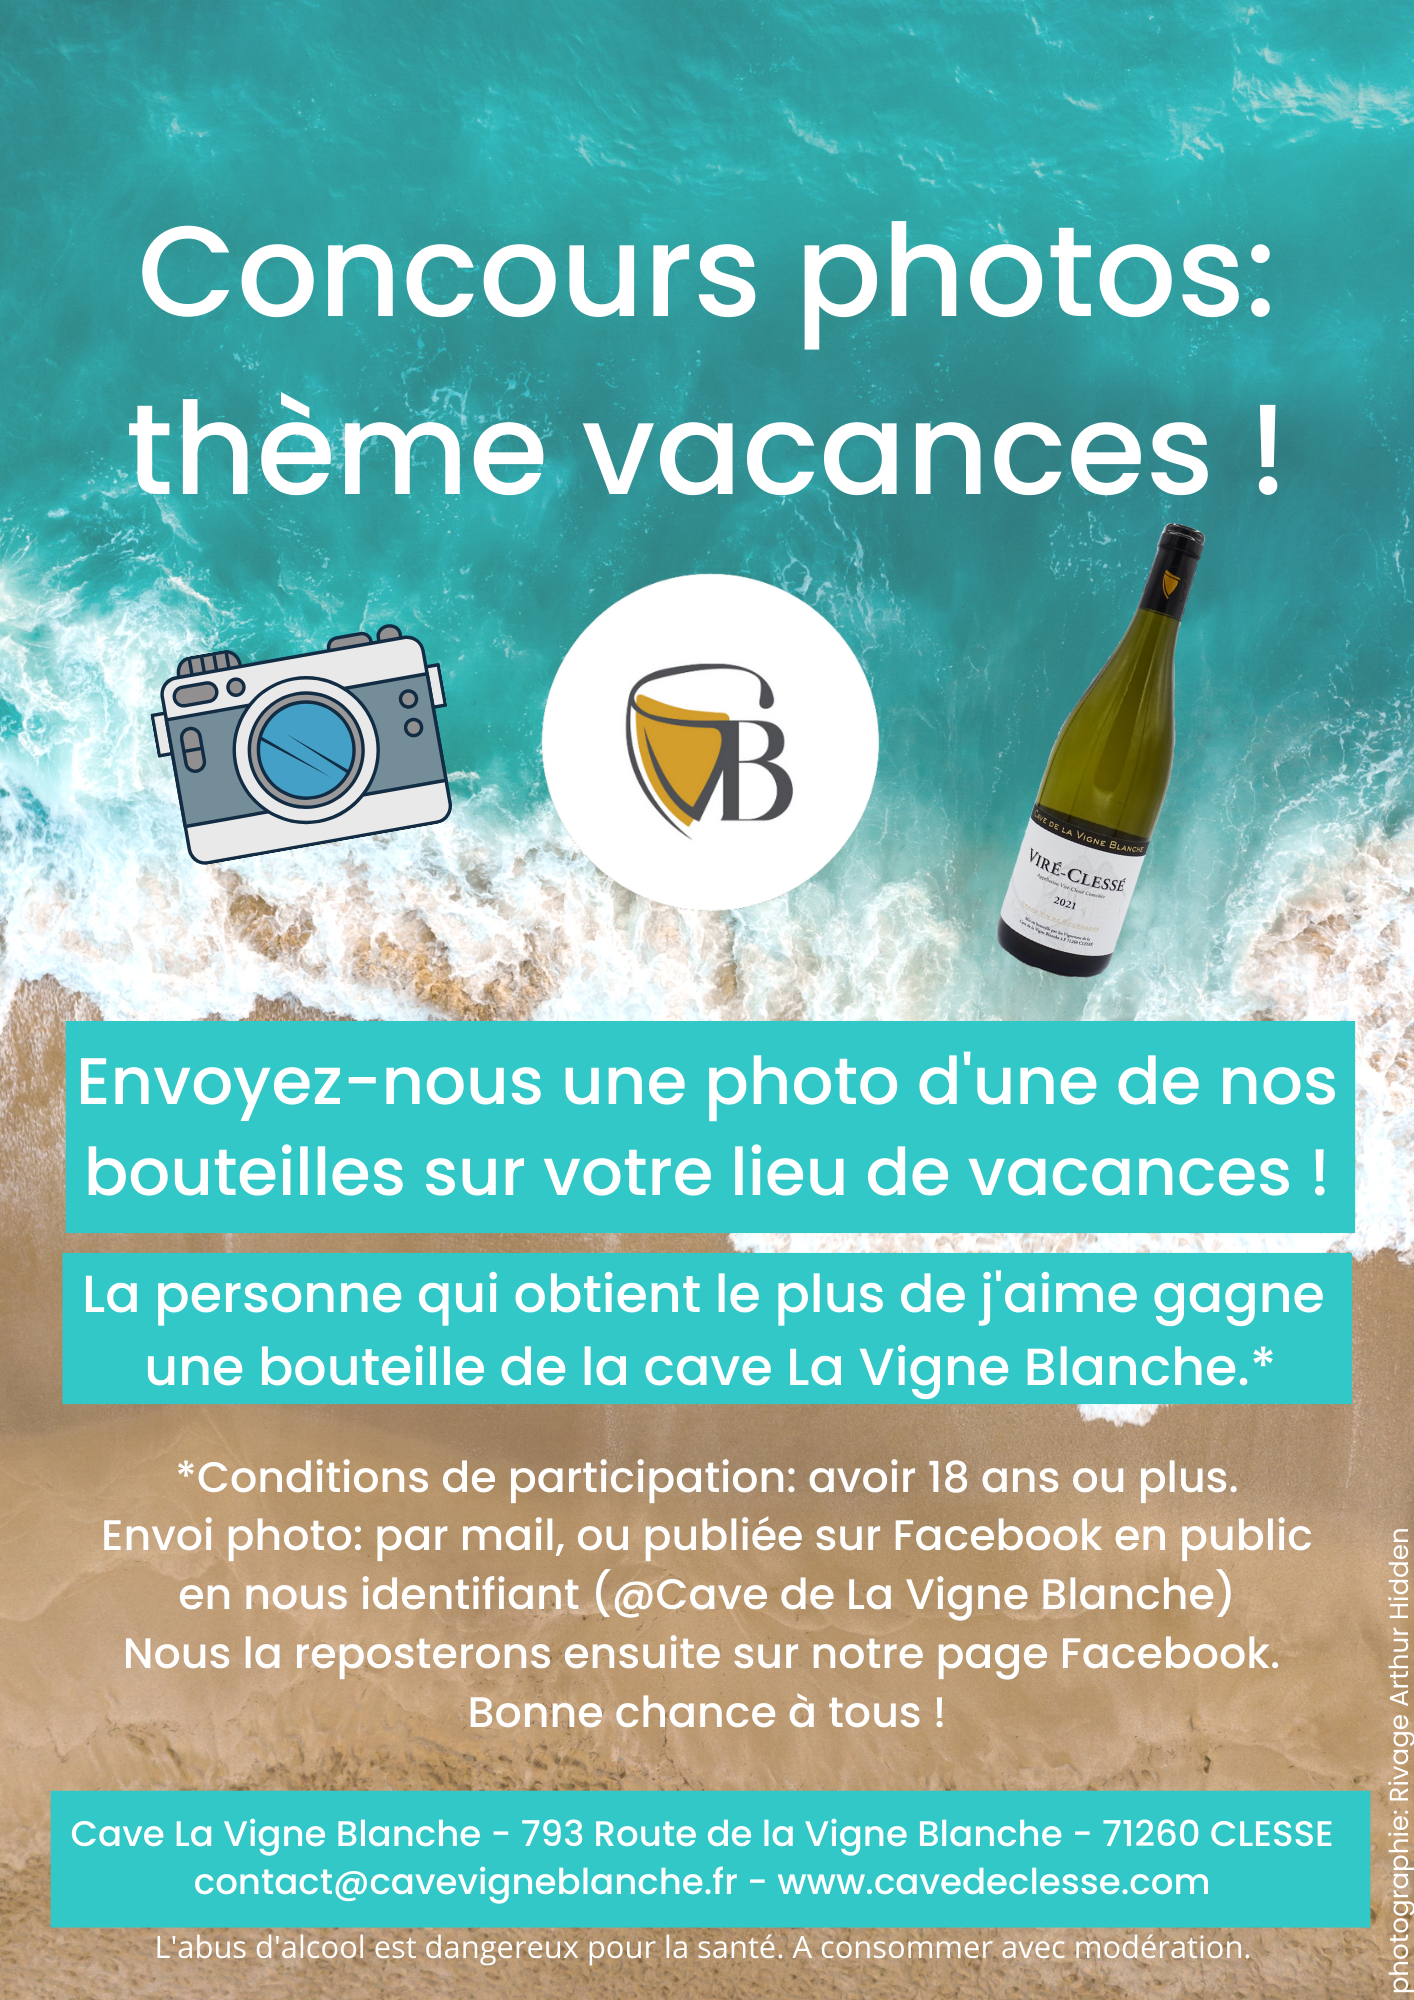 Concours Photos thème Vacances Cave Vigne Blanche